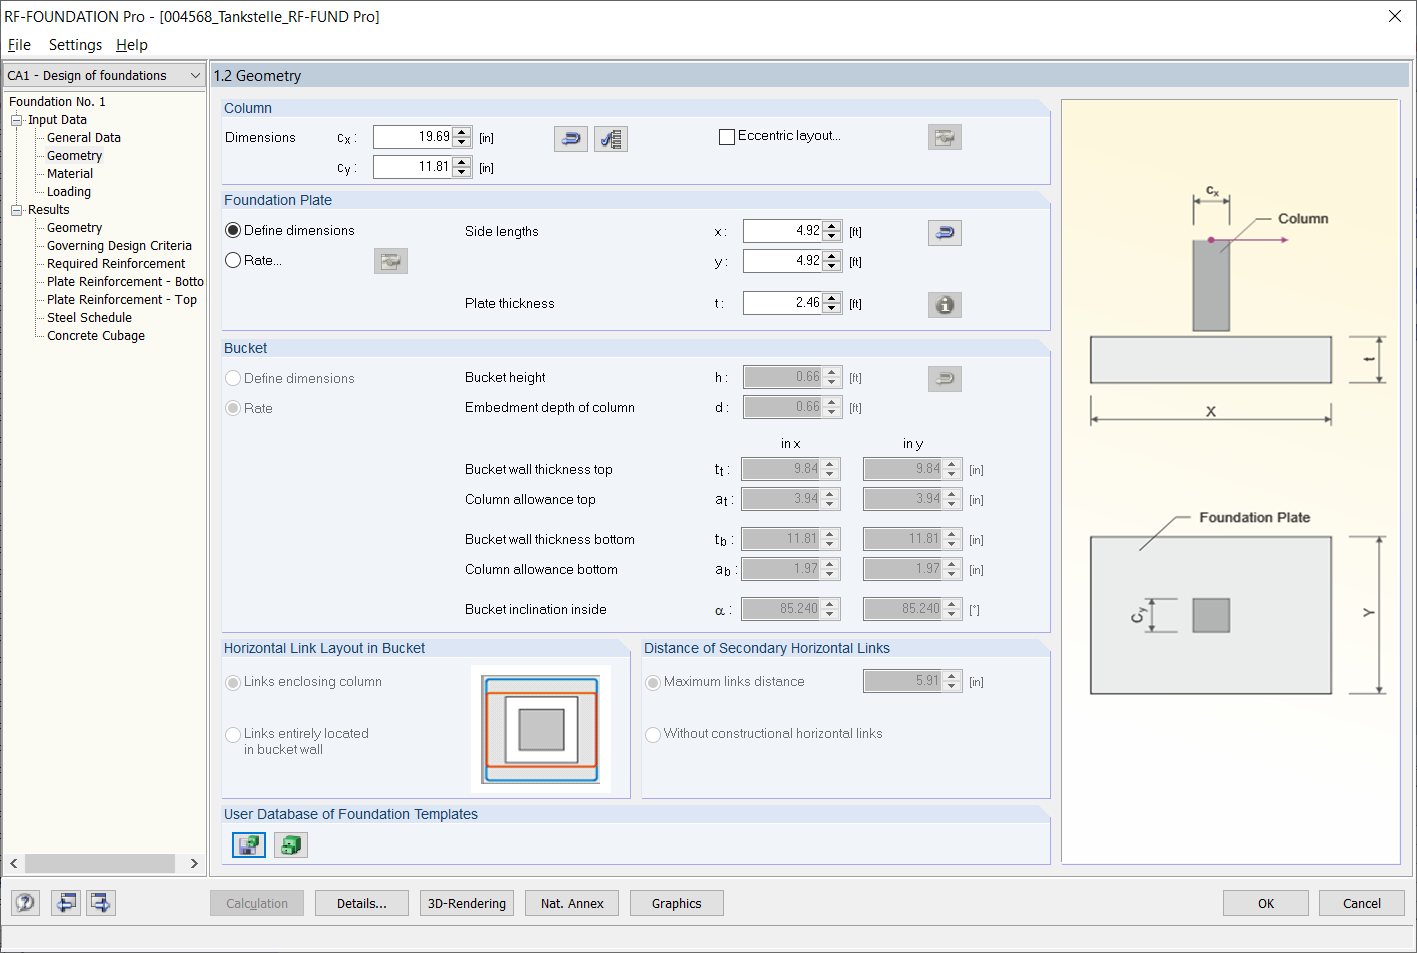 Window "1.2 Geometry" in RF-/FOUNDATION Pro